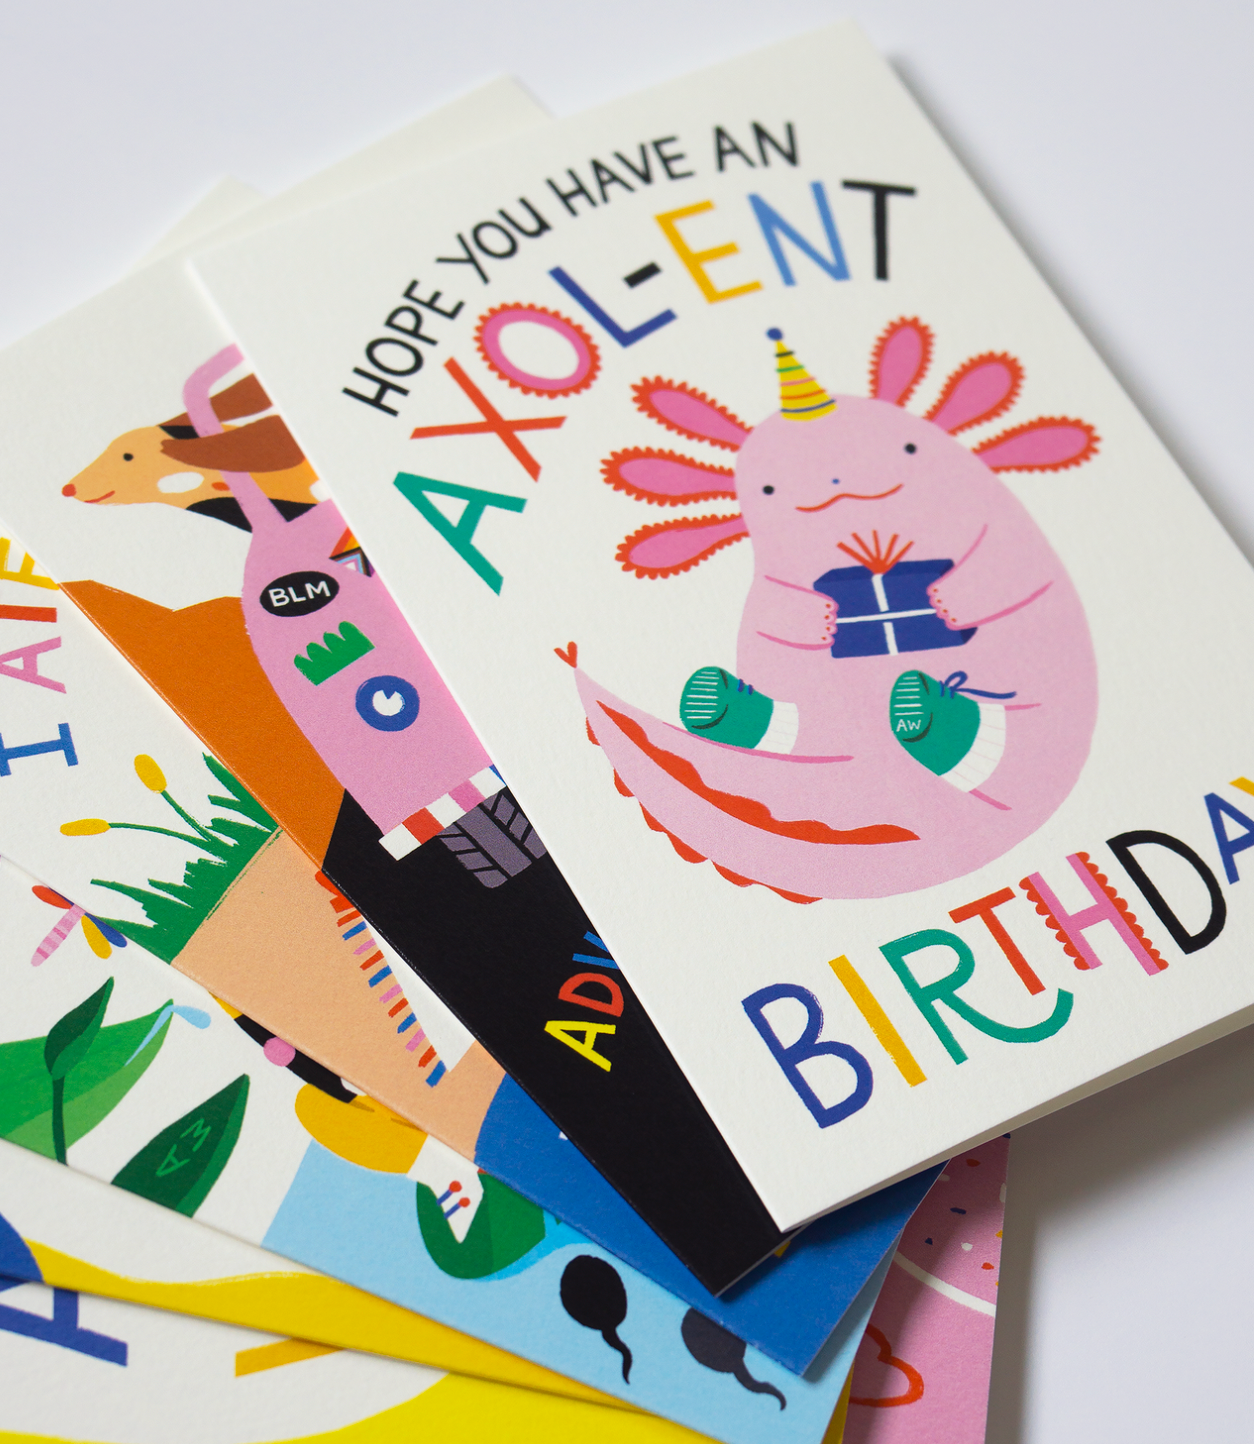 Card - Have An Axol-ent Birthday